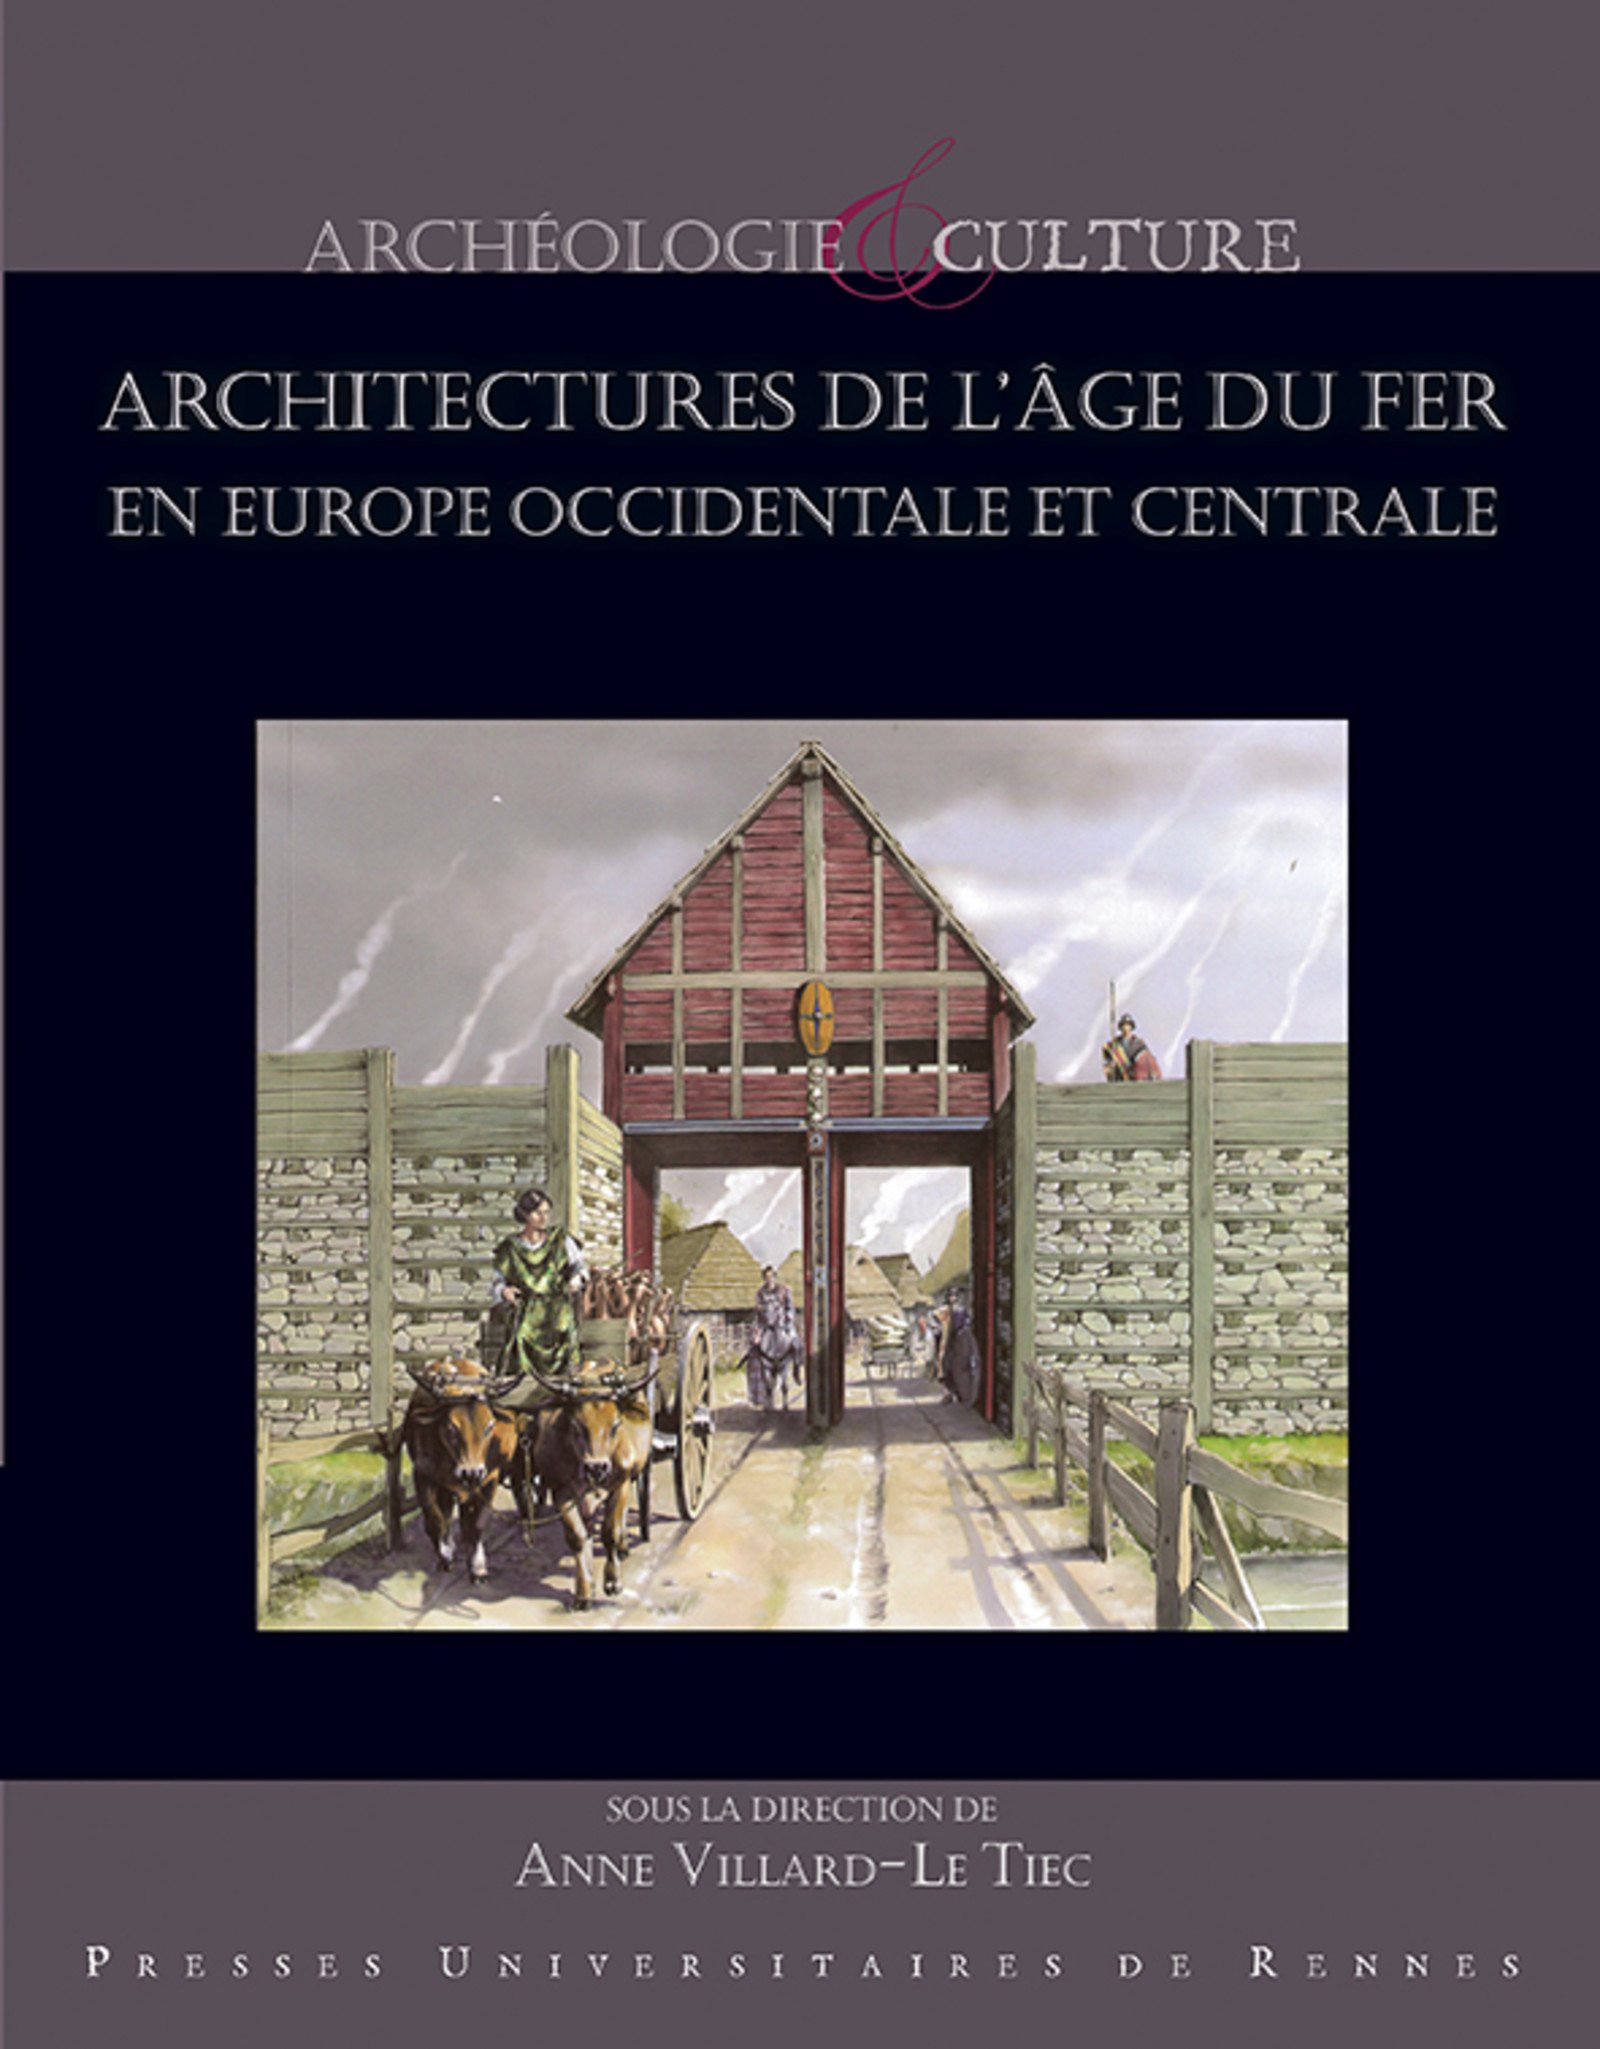 Architectures de l'âge du Fer en Europe occidentale et centrale, (actes 40e coll. AFEAF, Rennes, 2016), 2018, 735 p.